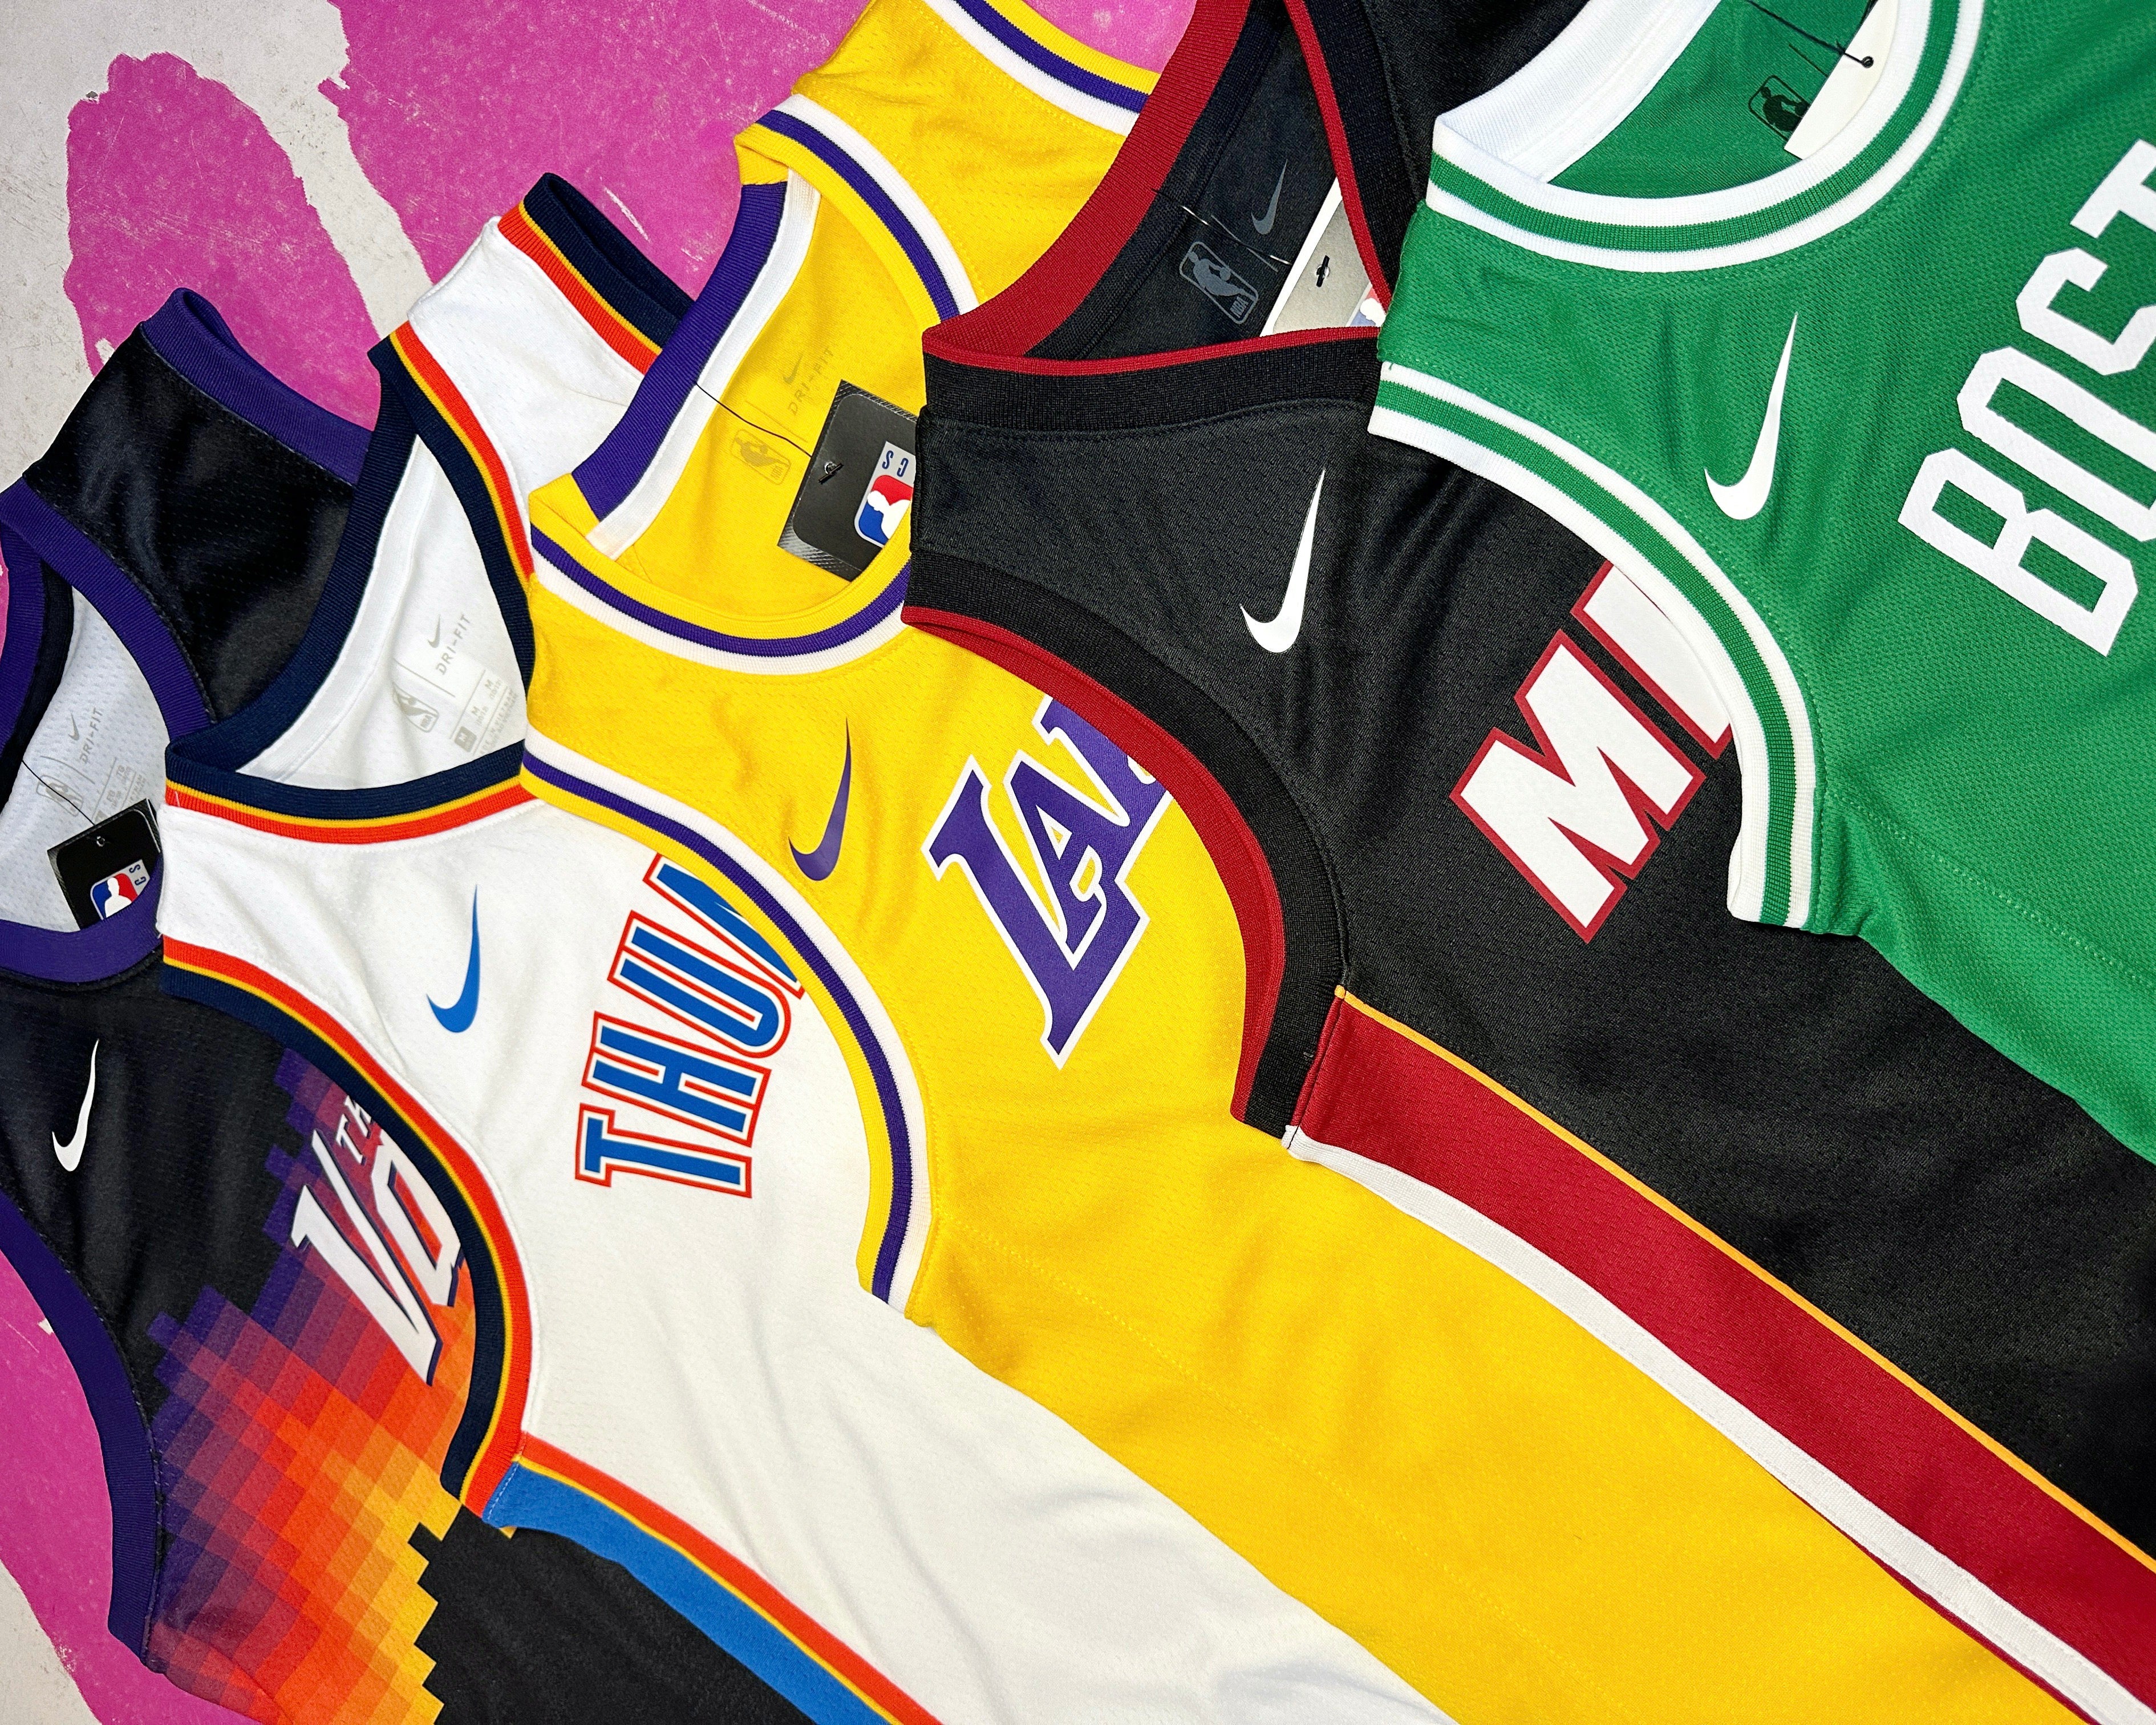 best websites to buy nba jerseys